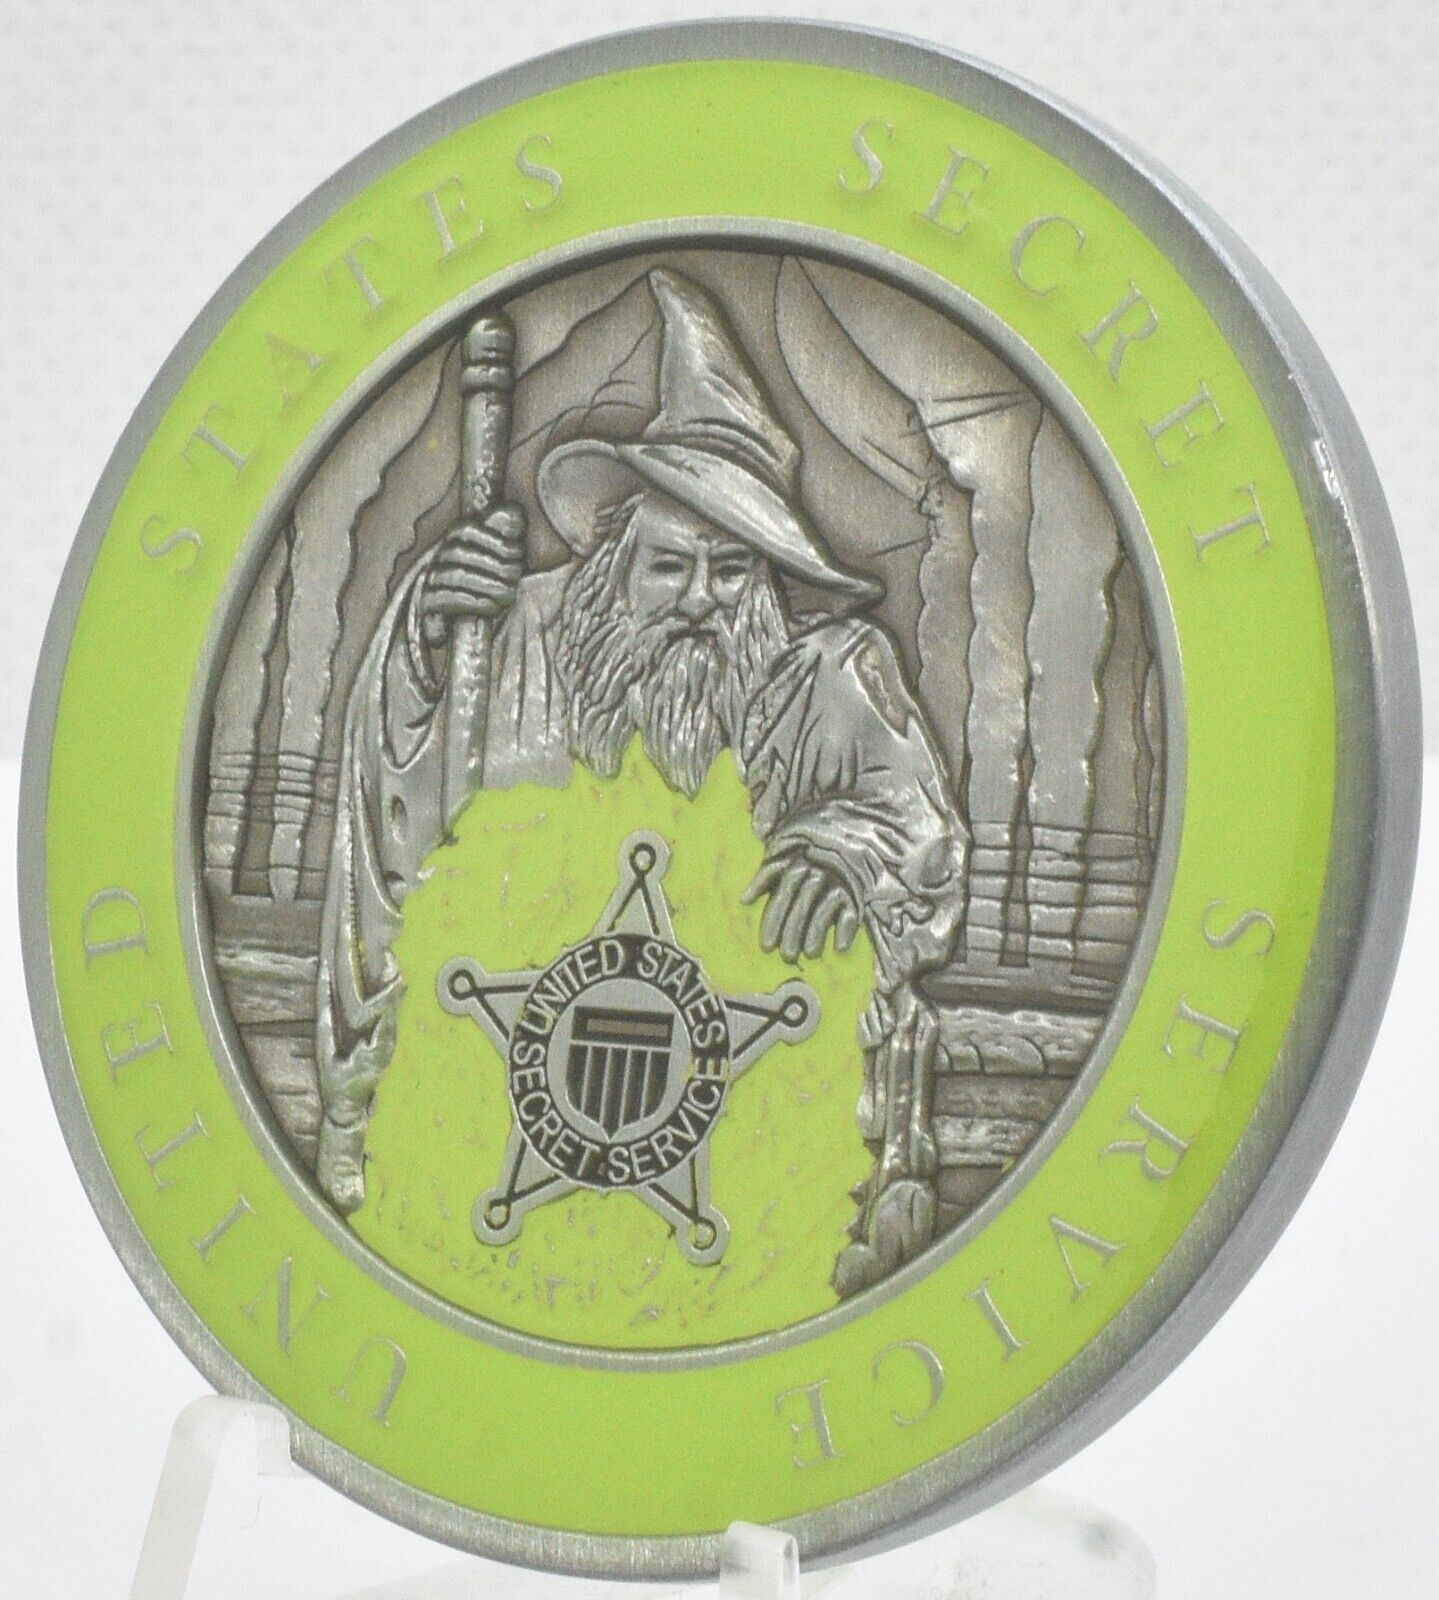 Secret Service Glow in the Dark WIZARD TSD GID Challenge Coin